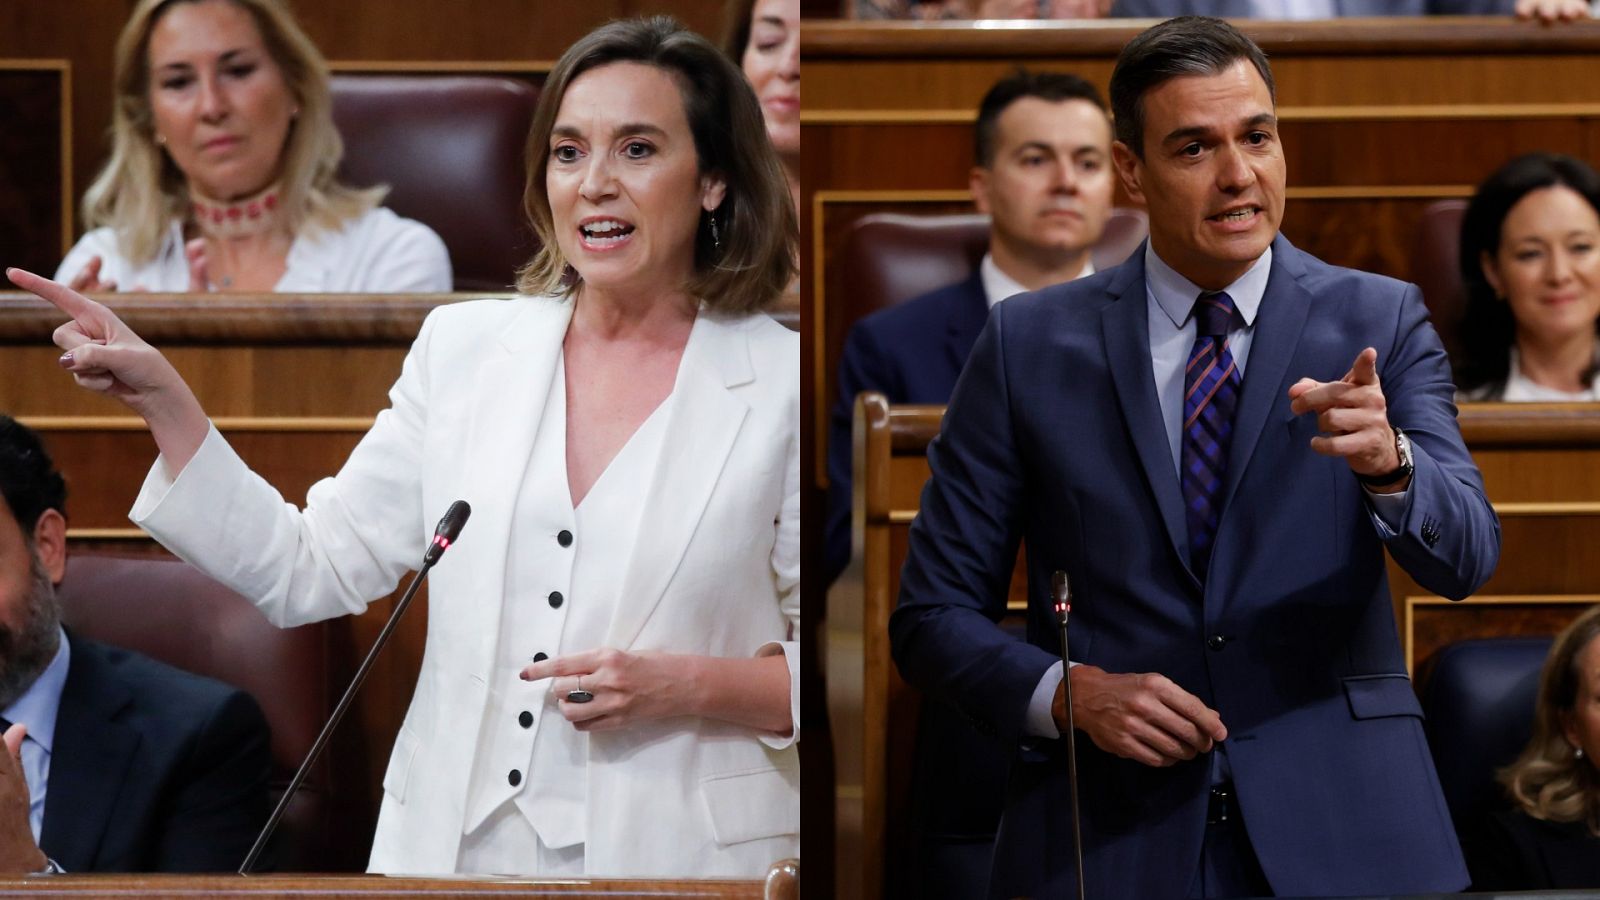 El PP saca pecho de la victoria en Andalucía y Sánchez advierte: "Las victorias jamás son definitivas"